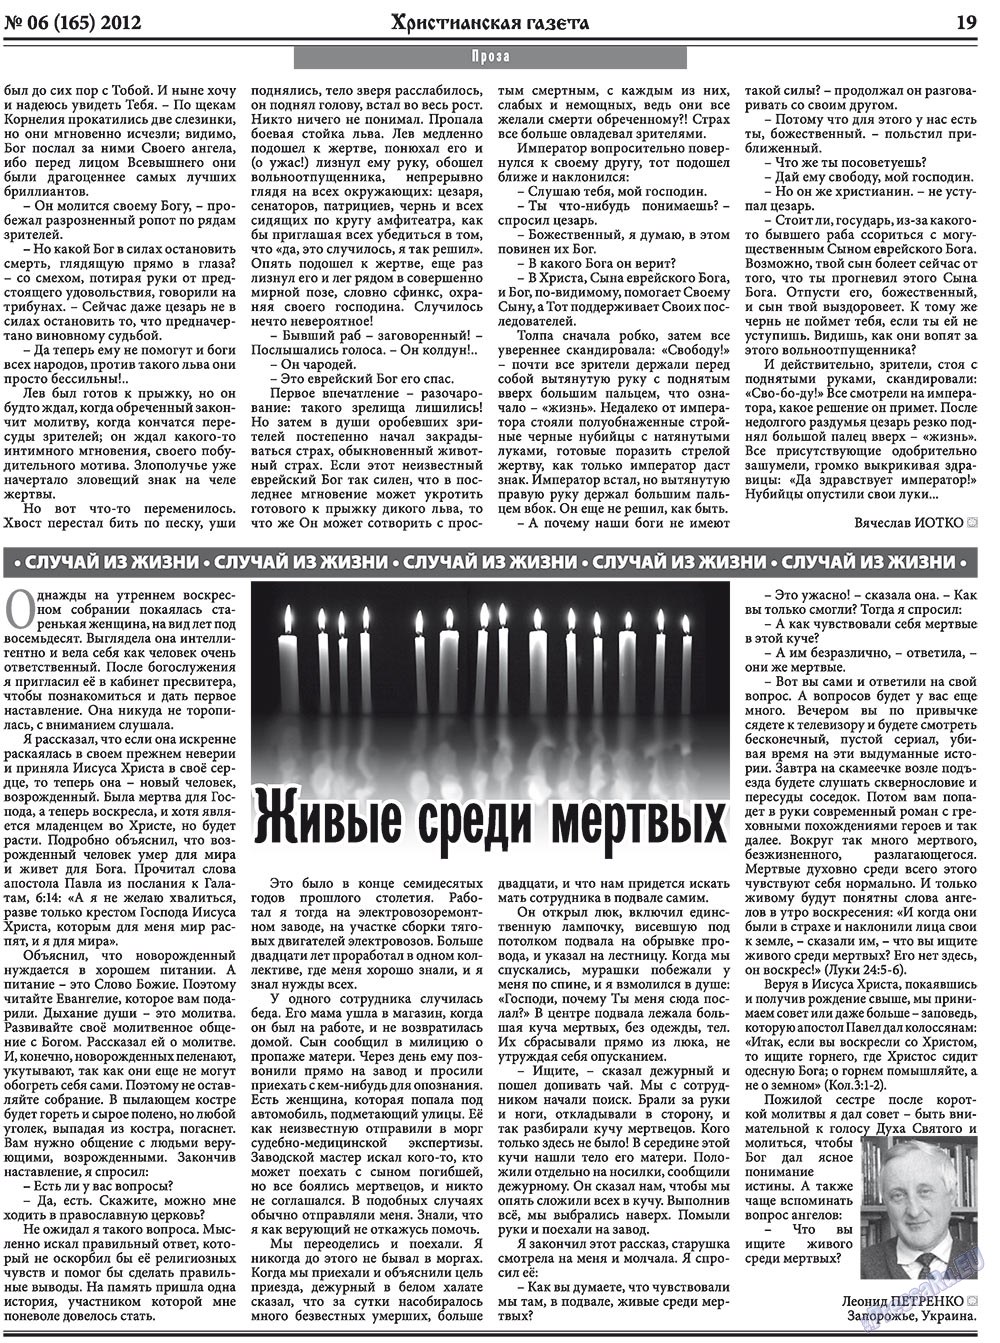 Христианская газета, газета. 2012 №6 стр.27